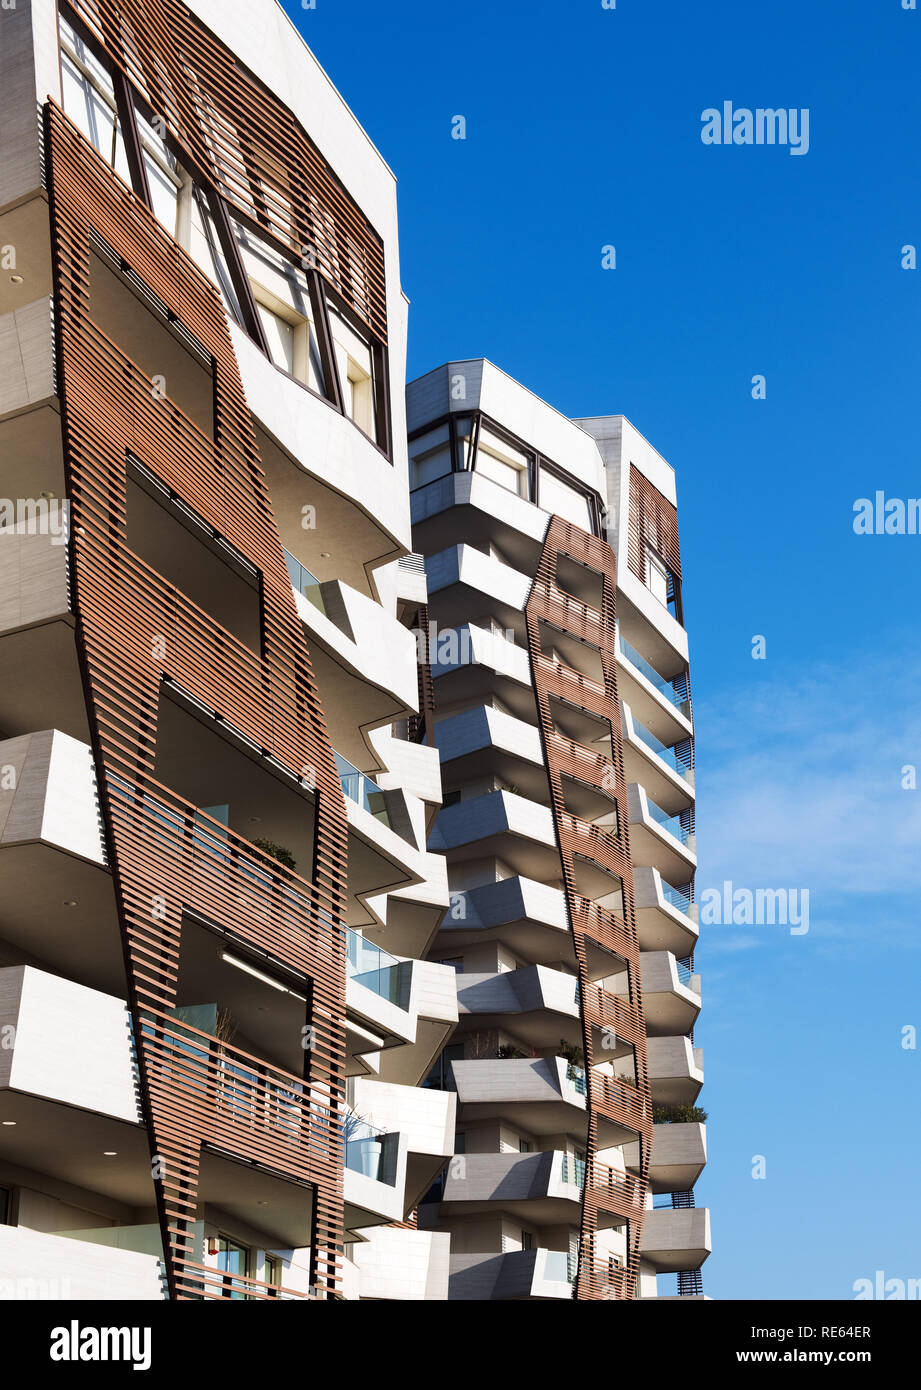 Bardage Bois détail sur les blocs d'appartements moderne avec des angles tordus sur le bâtiment contre un ciel bleu Banque D'Images